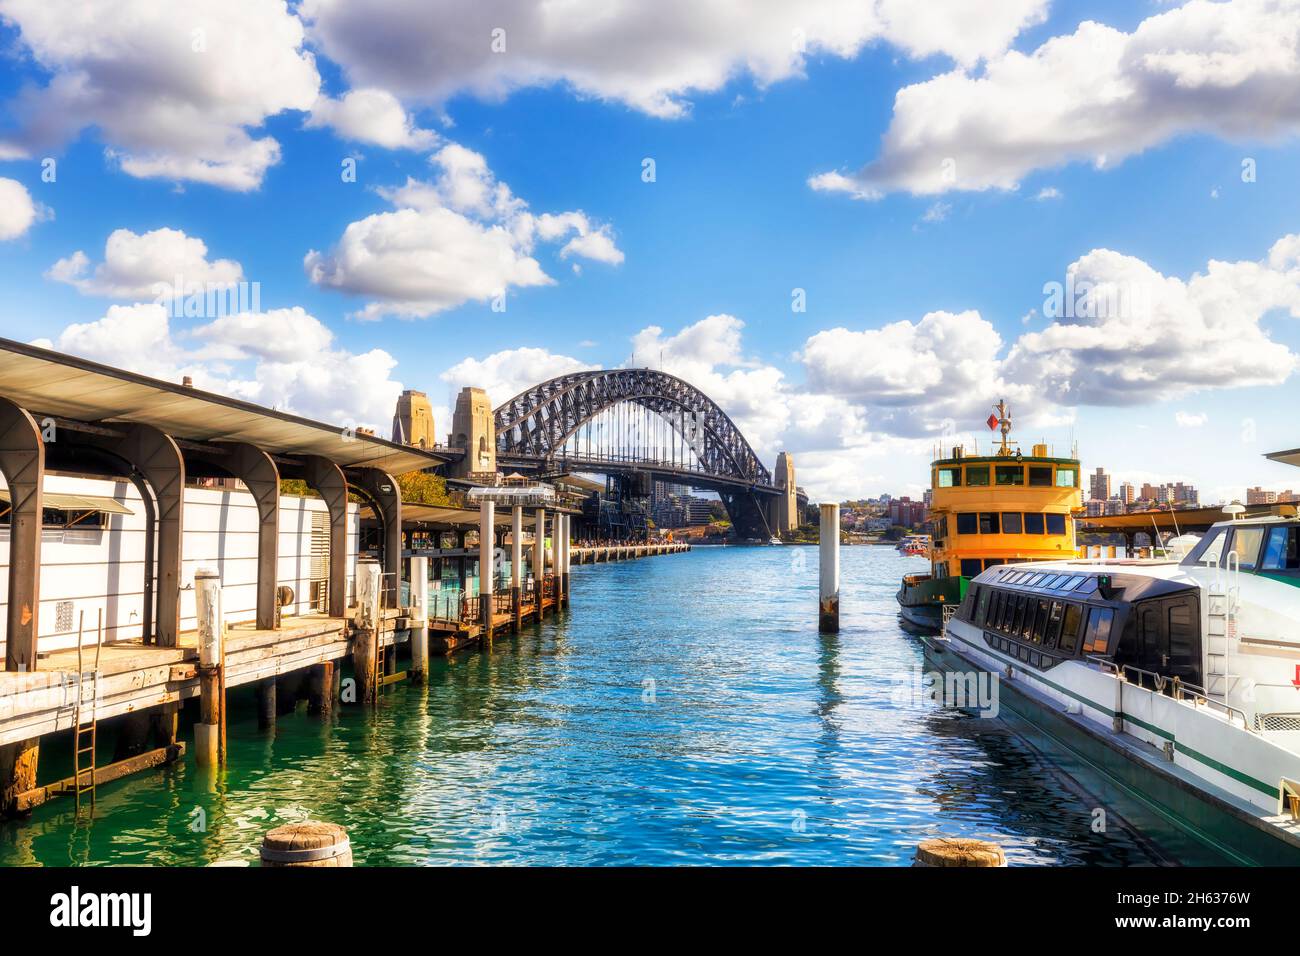 Die Sydney Ferry transportiert NSW an den Kais des Circular Quay mit Blick auf die Sydney Harbour Bridge, die auf dem Wasser schwimmt. Stockfoto